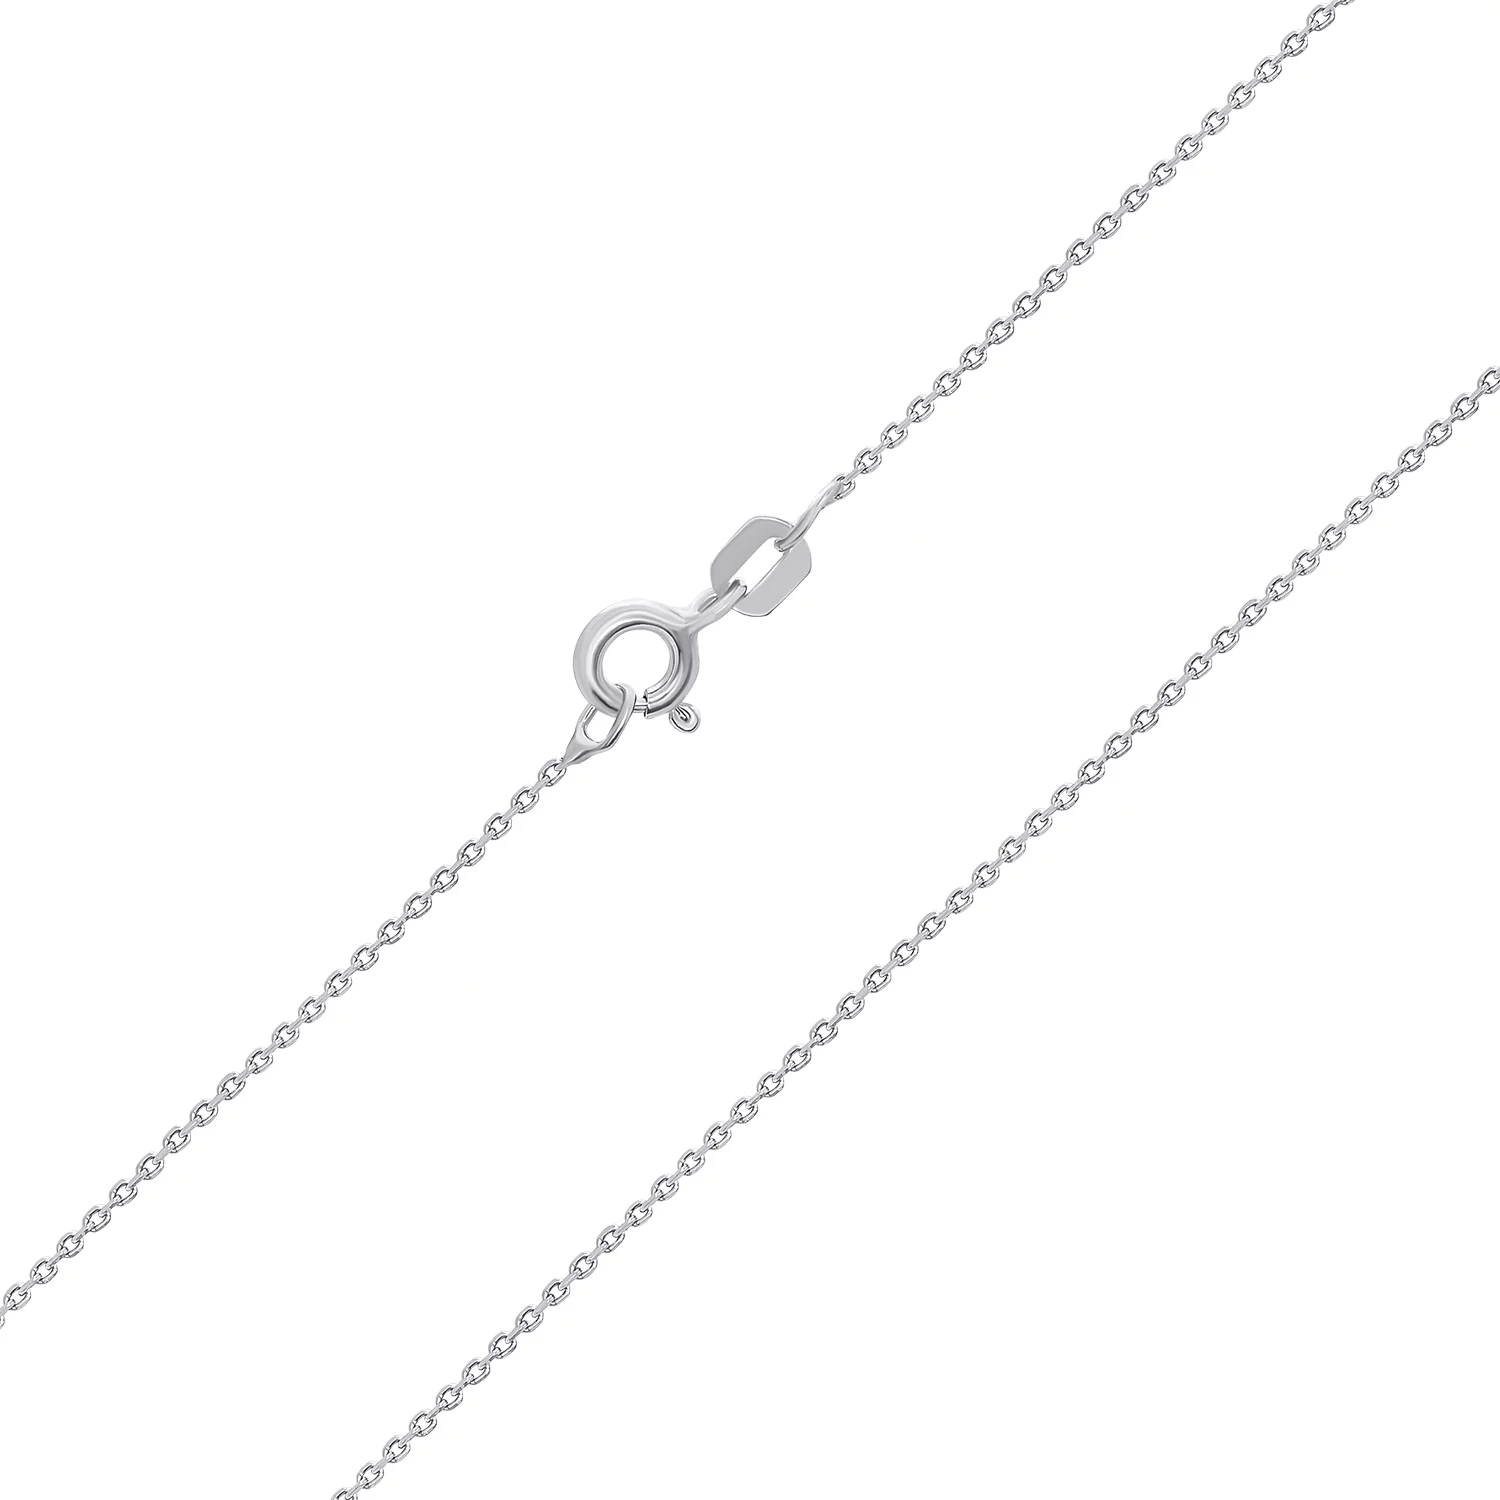 Цепочка серебряная плетение Якорь. Артикул 0306201: цена, отзывы, фото – купить в интернет-магазине AURUM